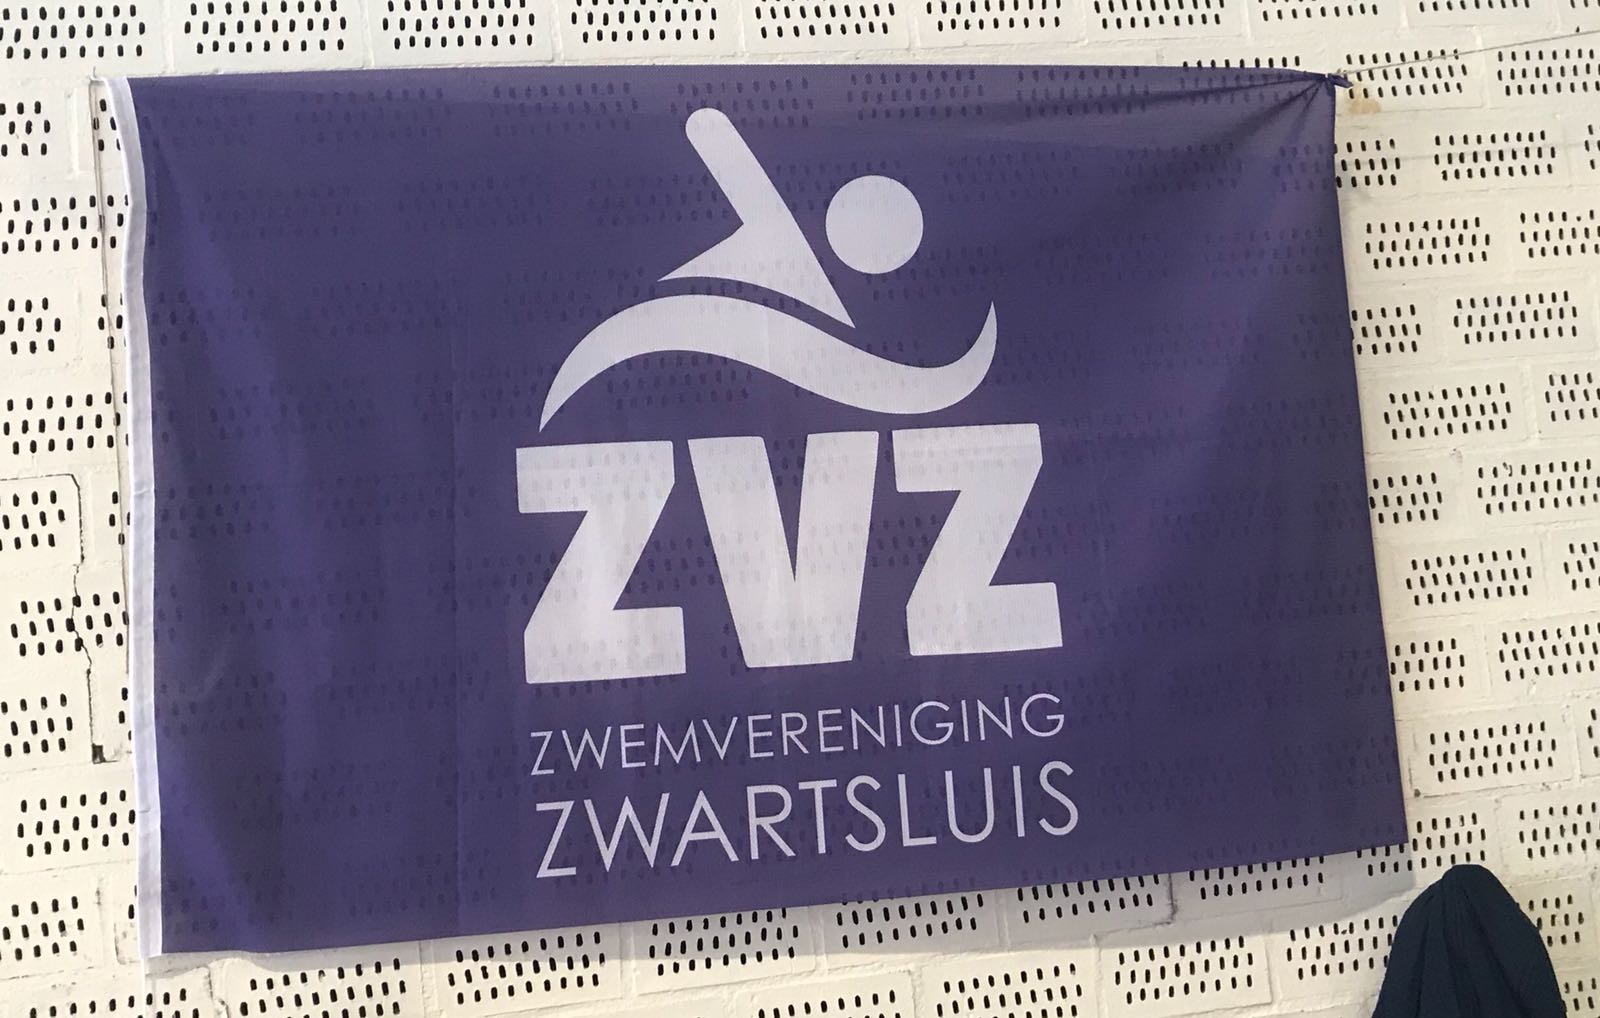 ZvZ zwemmers vallen in de prijzen in Zwolle